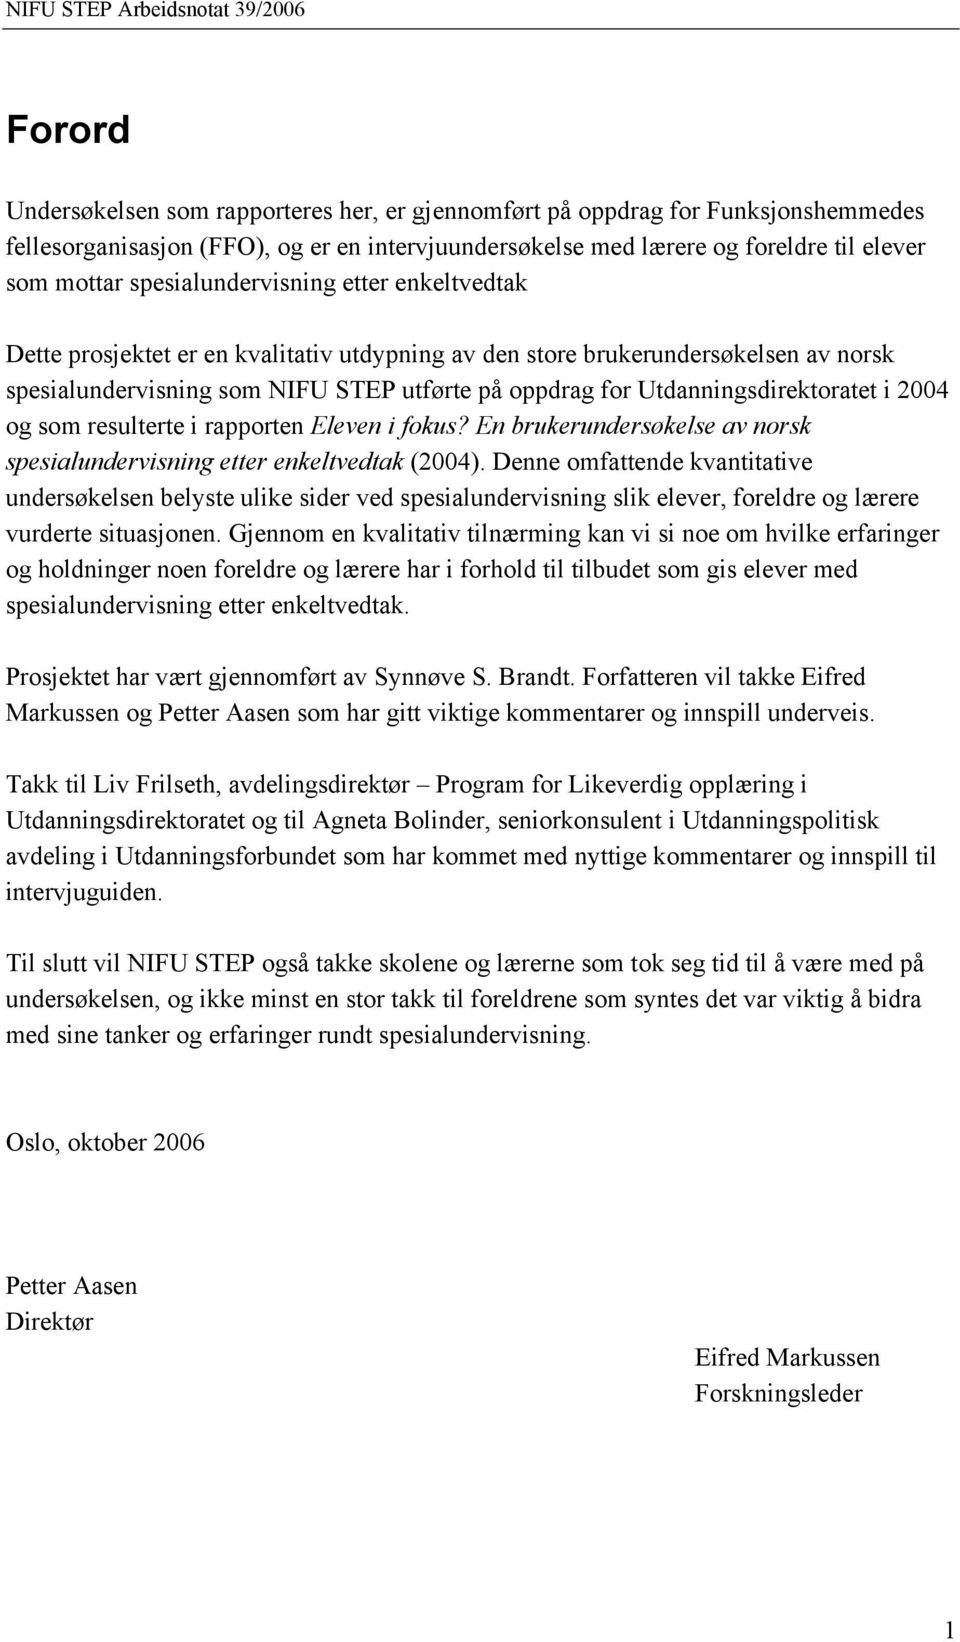 Utdanningsdirektoratet i 2004 og som resulterte i rapporten Eleven i fokus? En brukerundersøkelse av norsk spesialundervisning etter enkeltvedtak (2004).